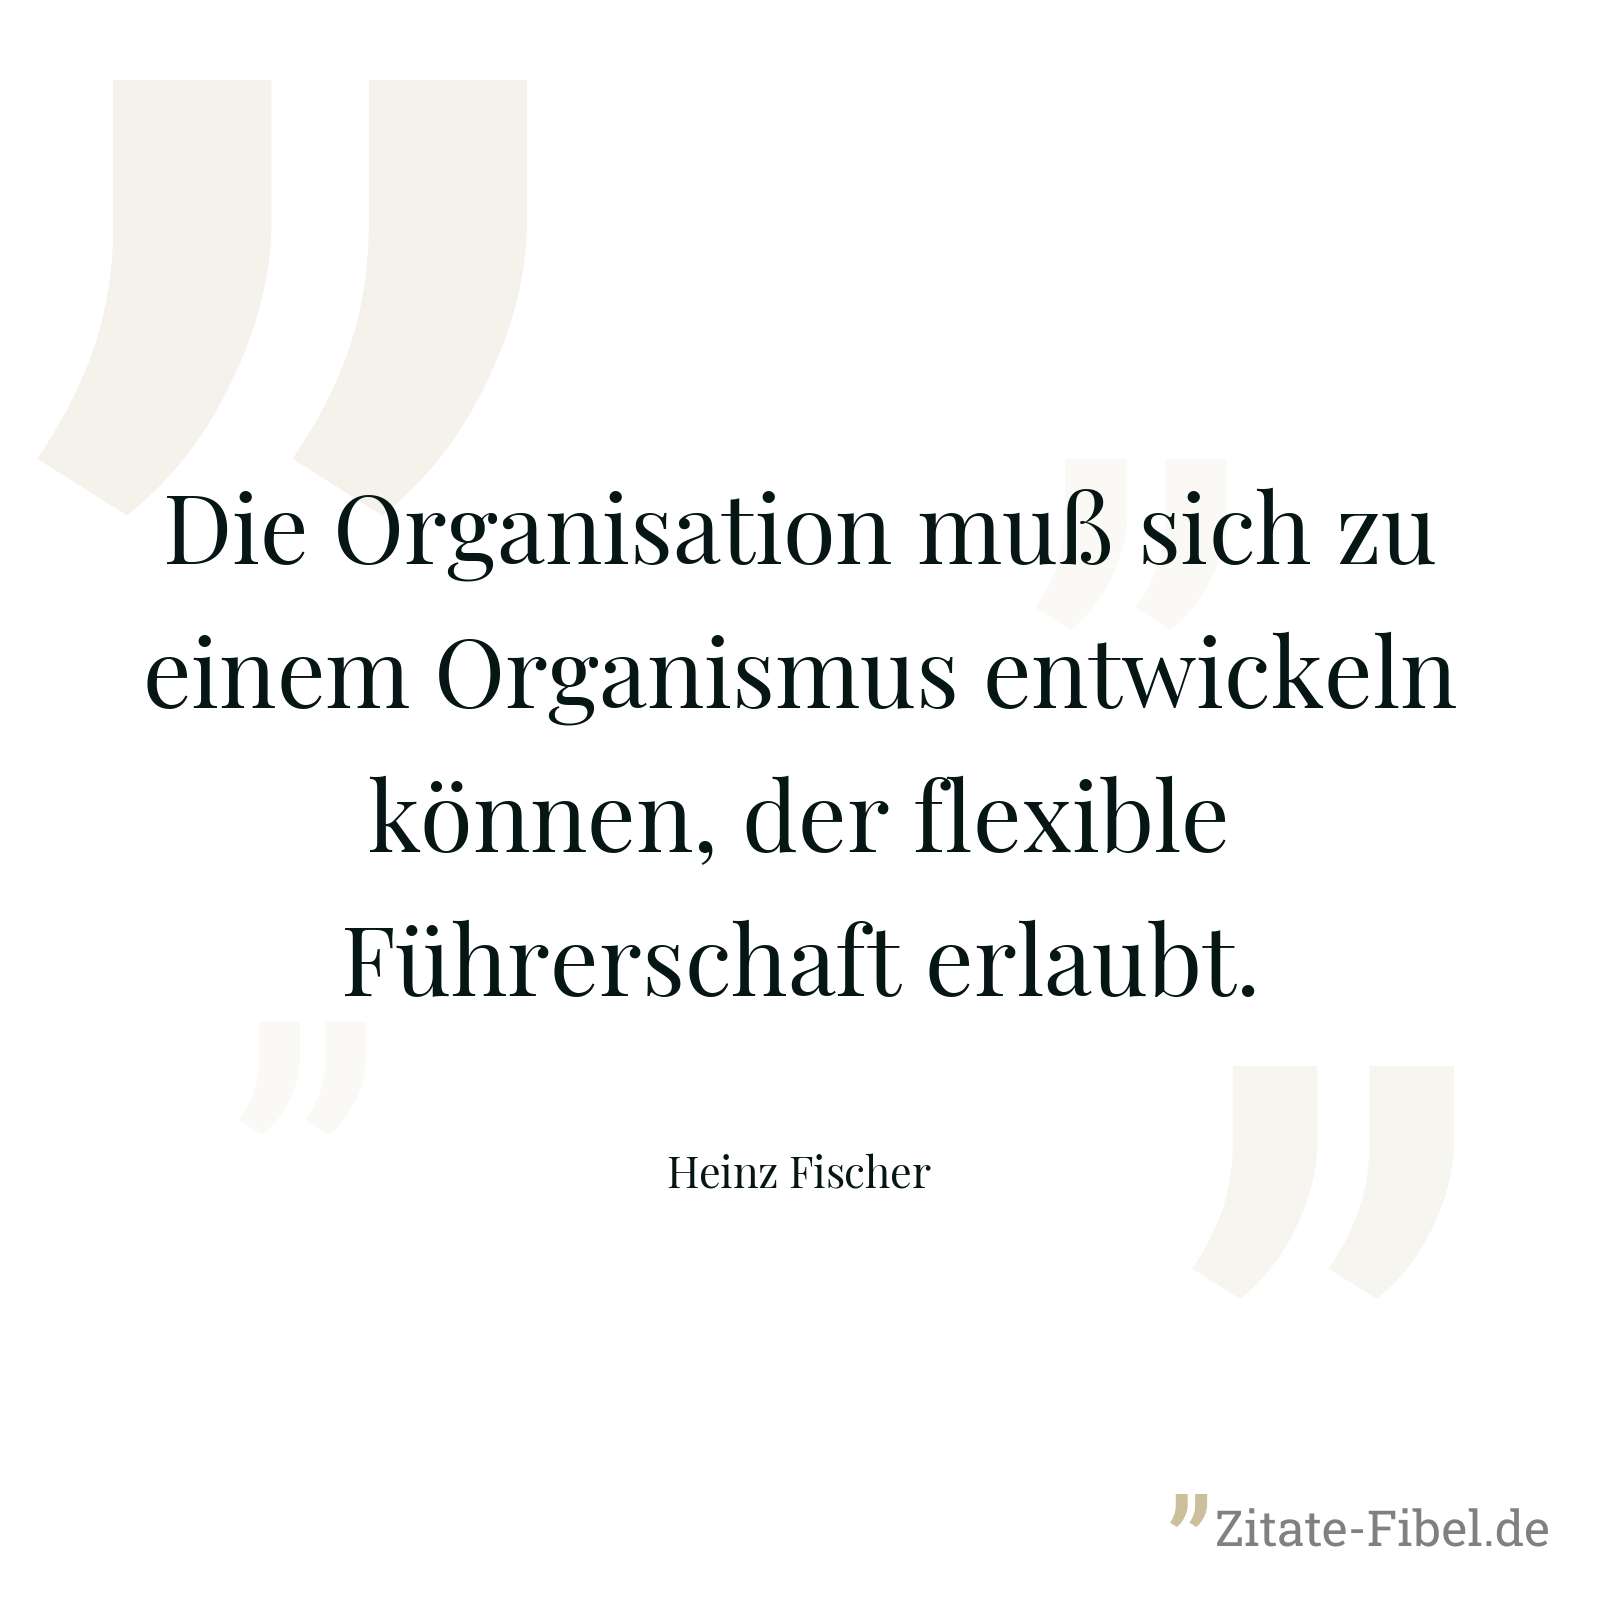 Die Organisation muß sich zu einem Organismus entwickeln können, der flexible Führerschaft erlaubt. - Heinz Fischer